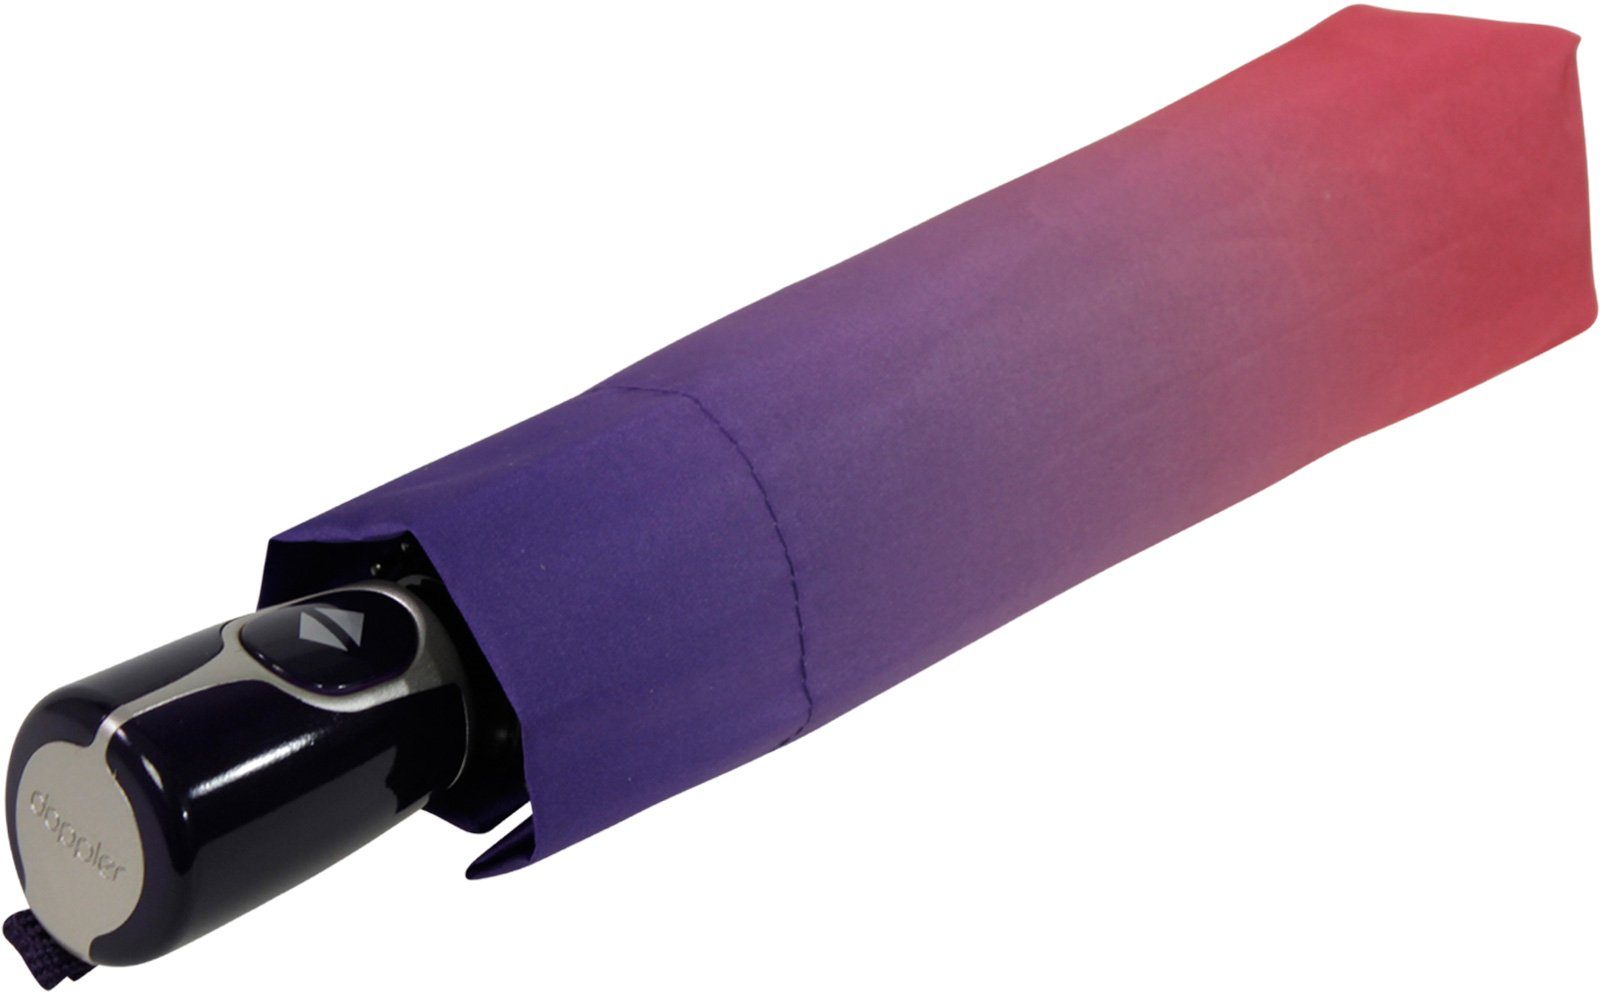 New Auf-Zu-Automatik doppler® Damen lila-rosa Fiber Magic - stabil Taschenregenschirm York, elegant, praktisch und